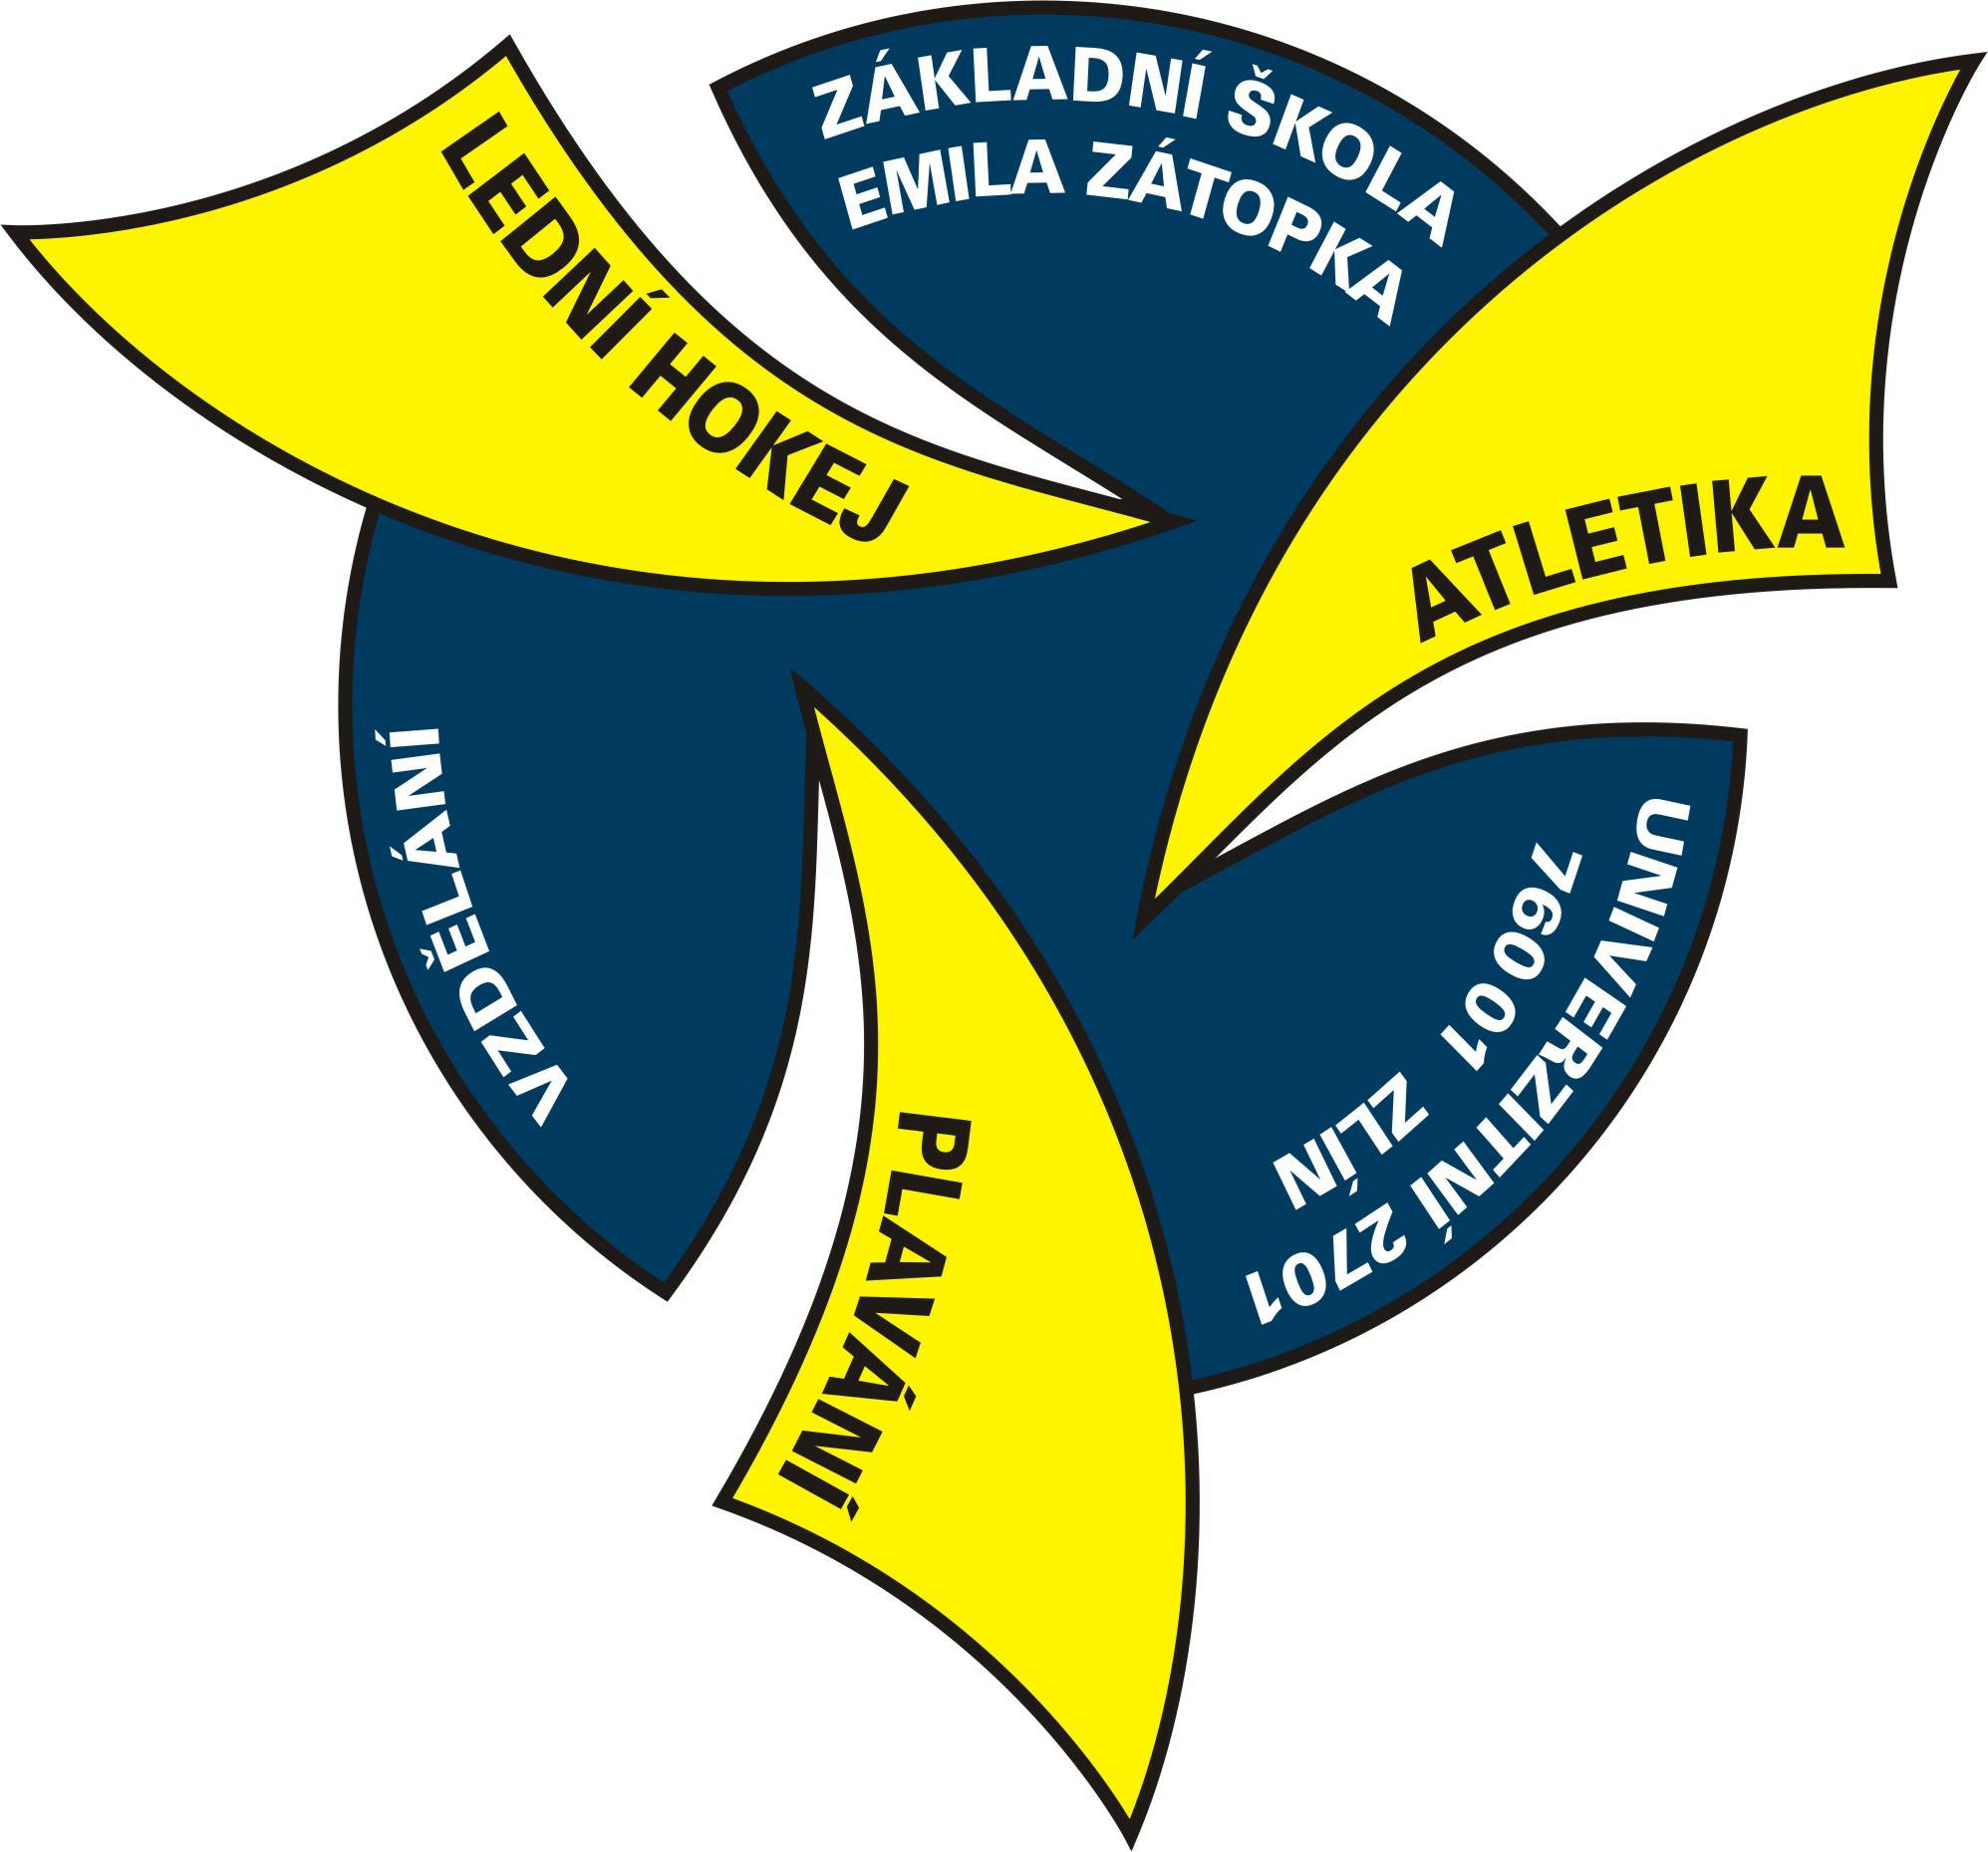 logo zs